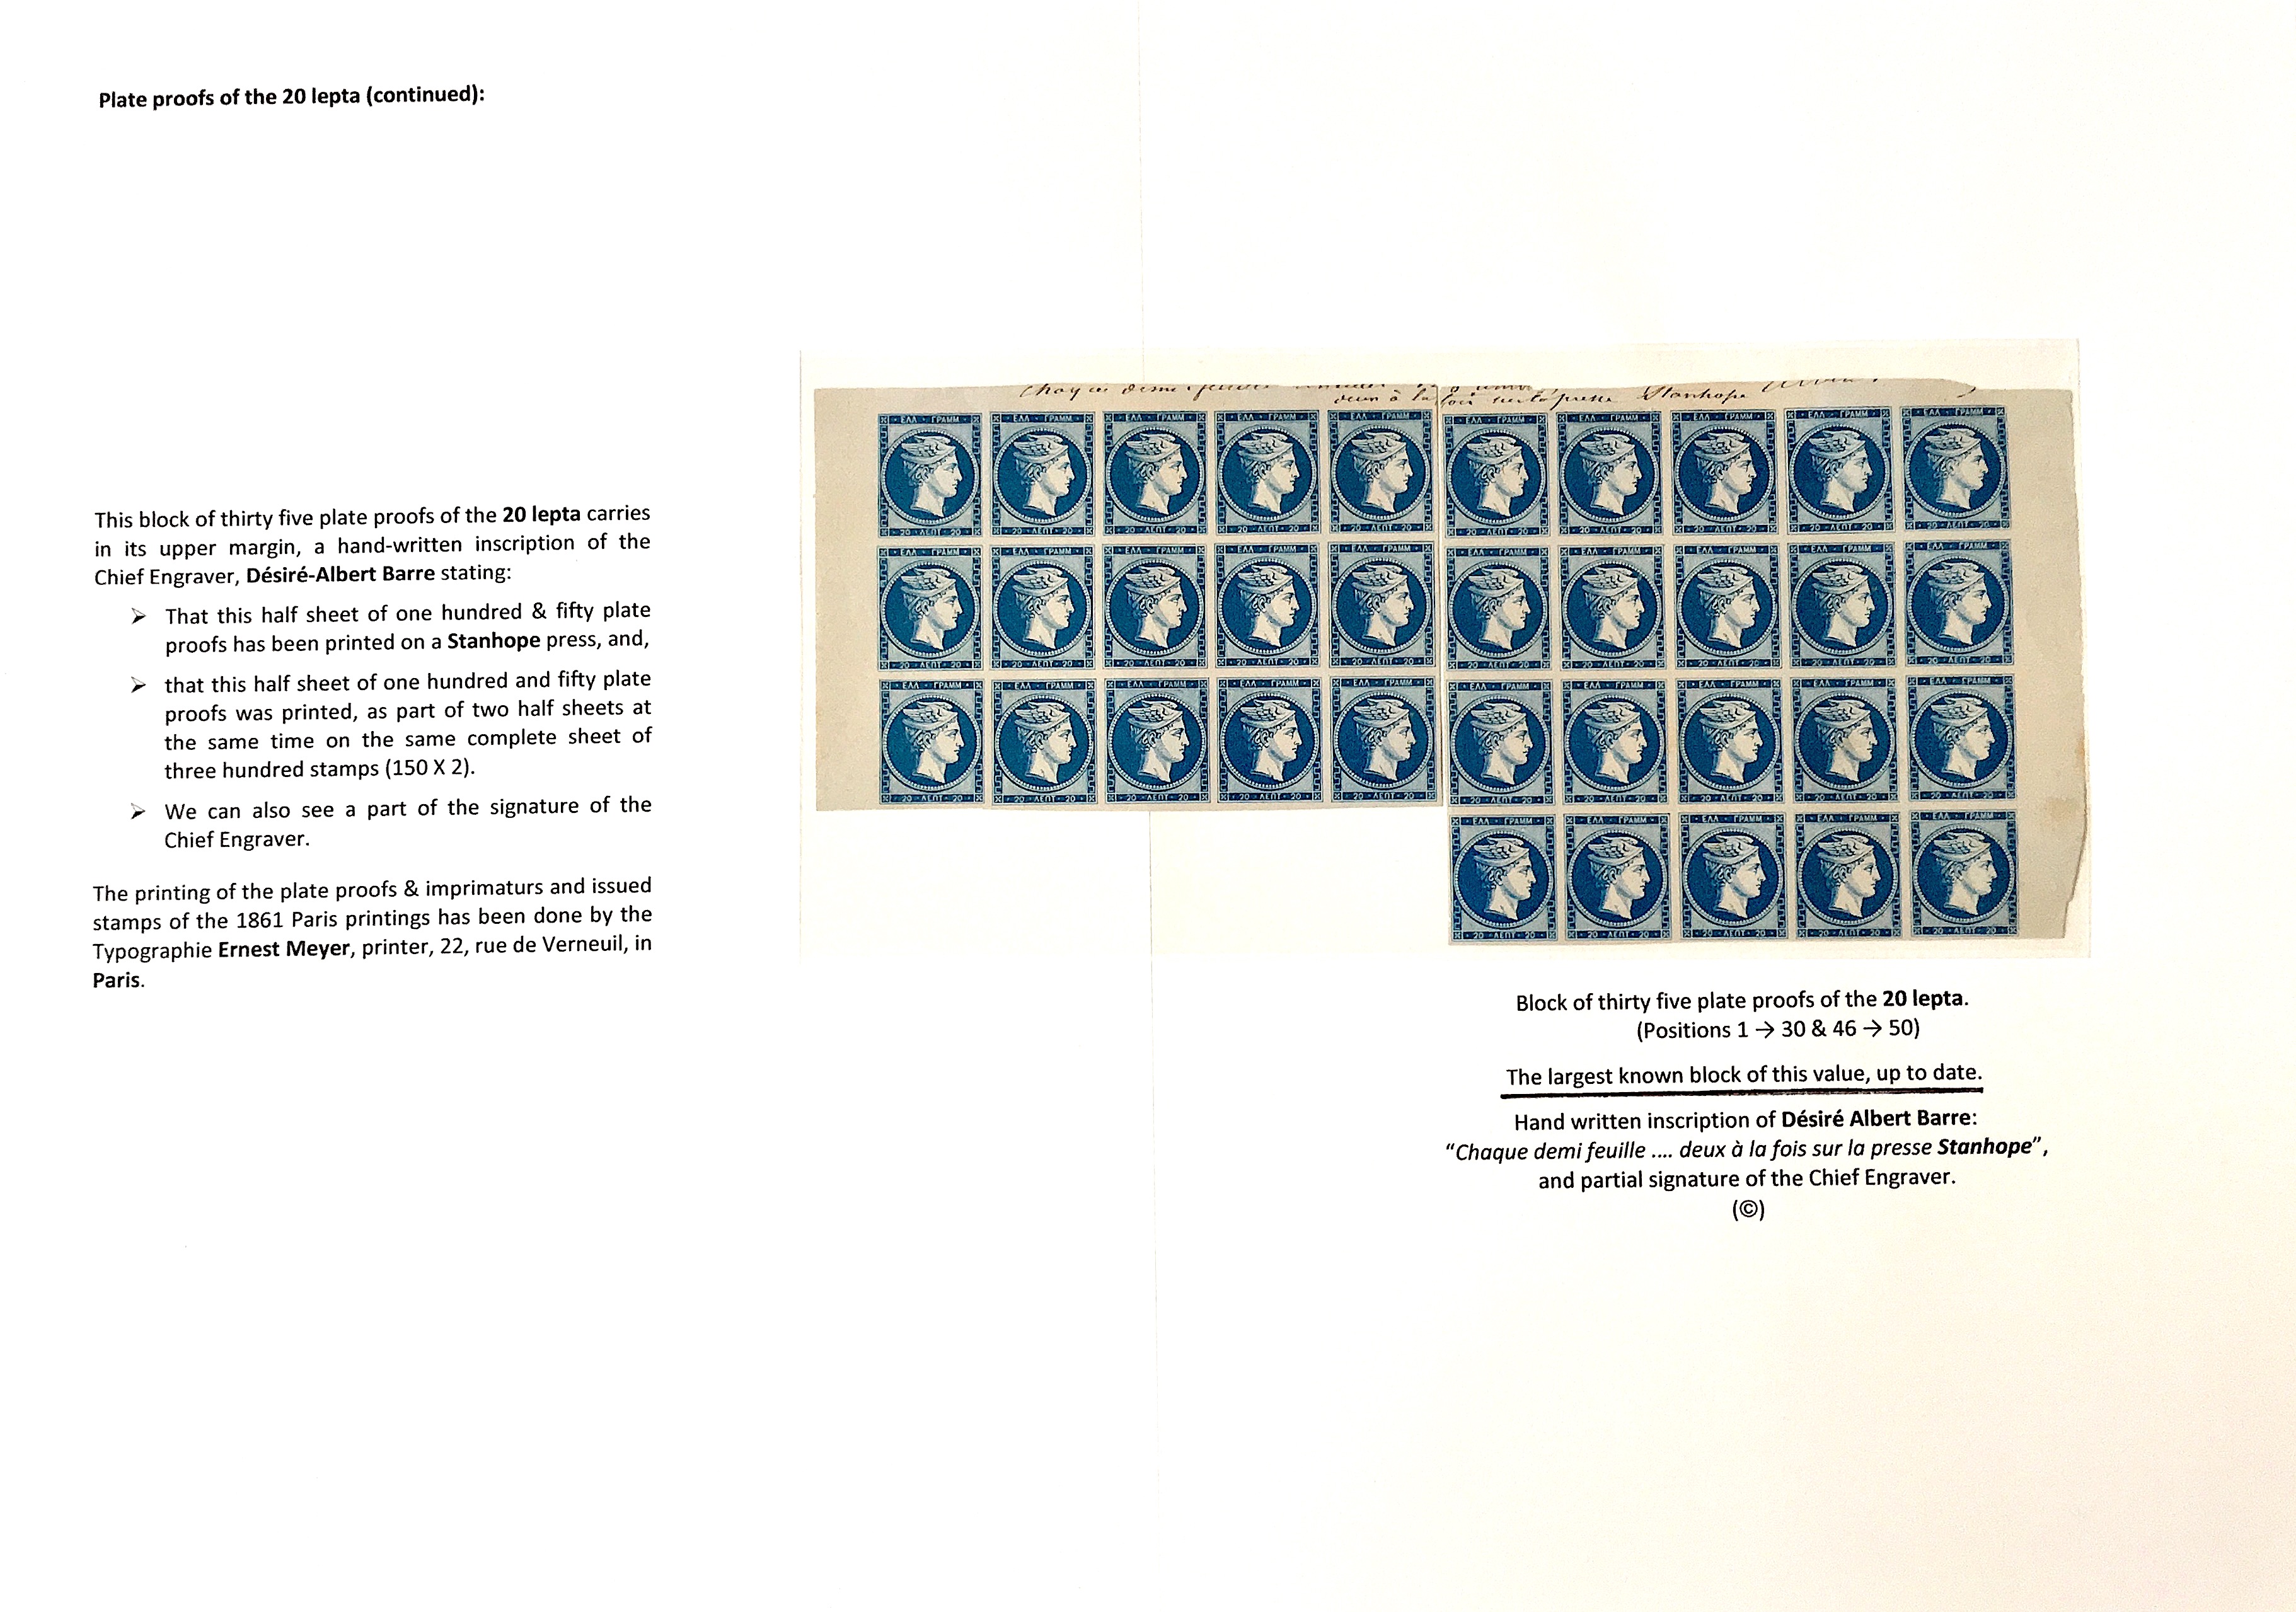 La fabrication et l���utilisation postale des tirages de Paris de la grosse t��te d���Herm��s de Gr��ce��� p. 15